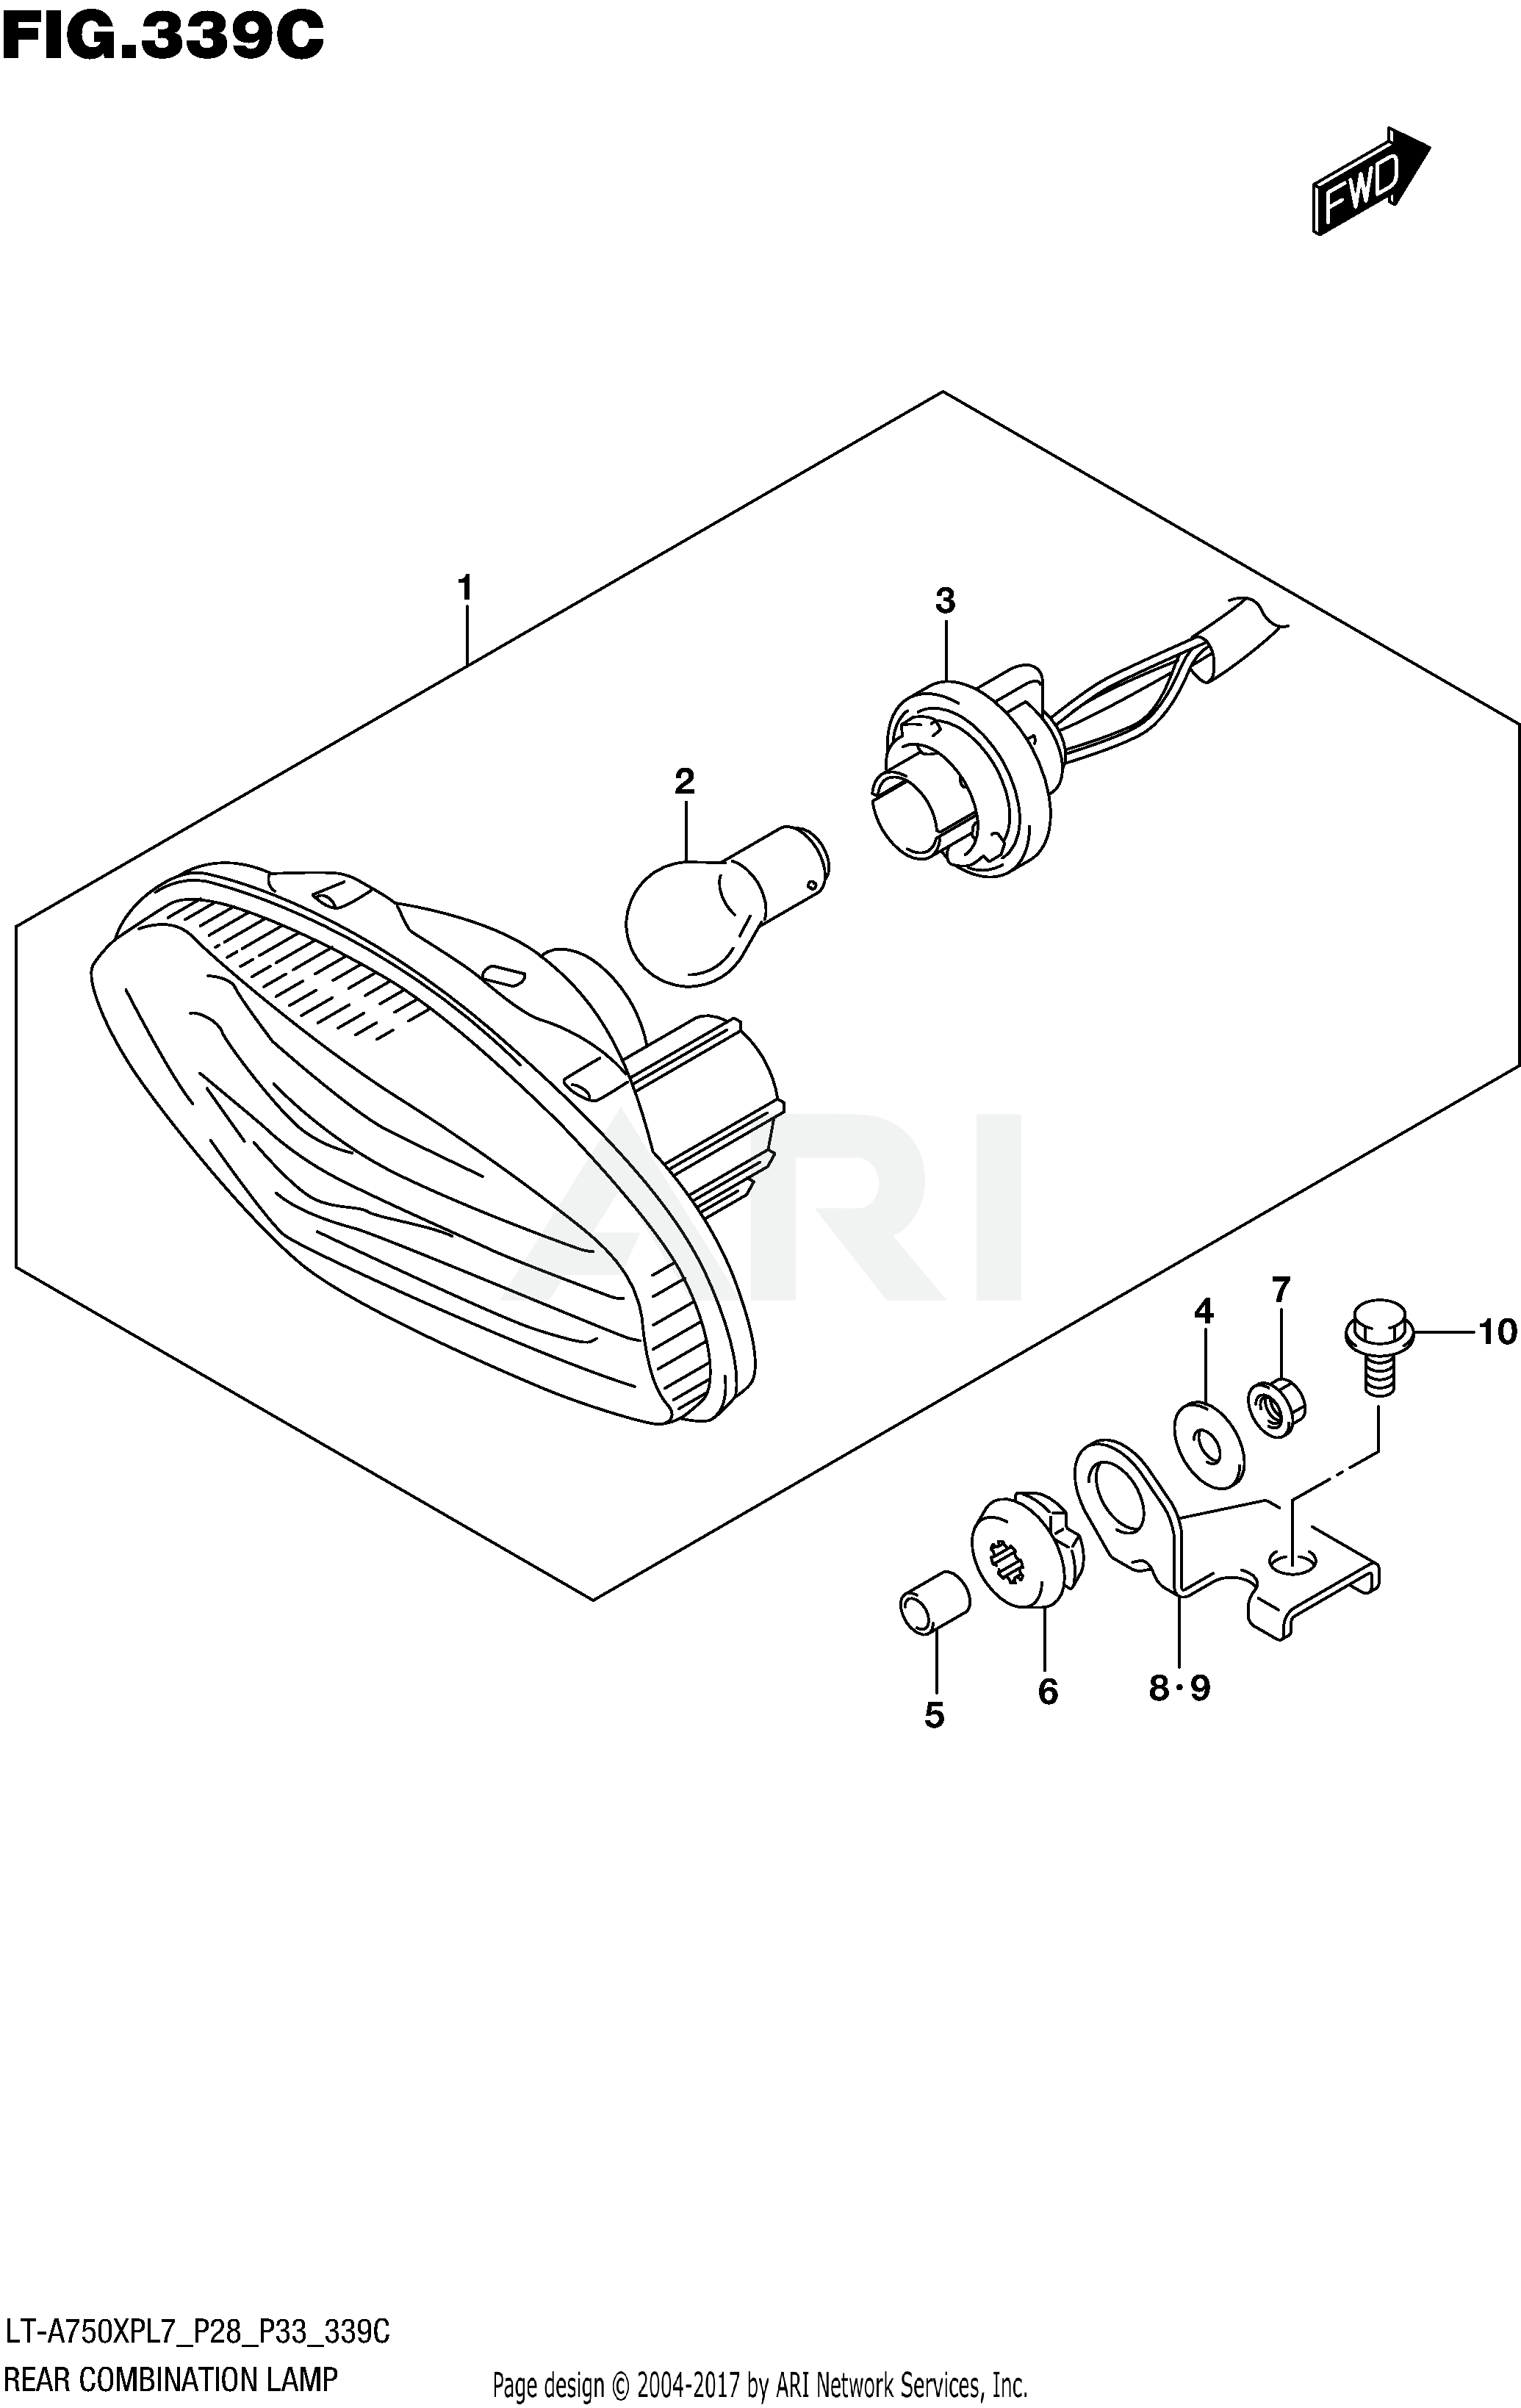 REAR COMBINATION LAMP (LT-A750XPL7 P33)